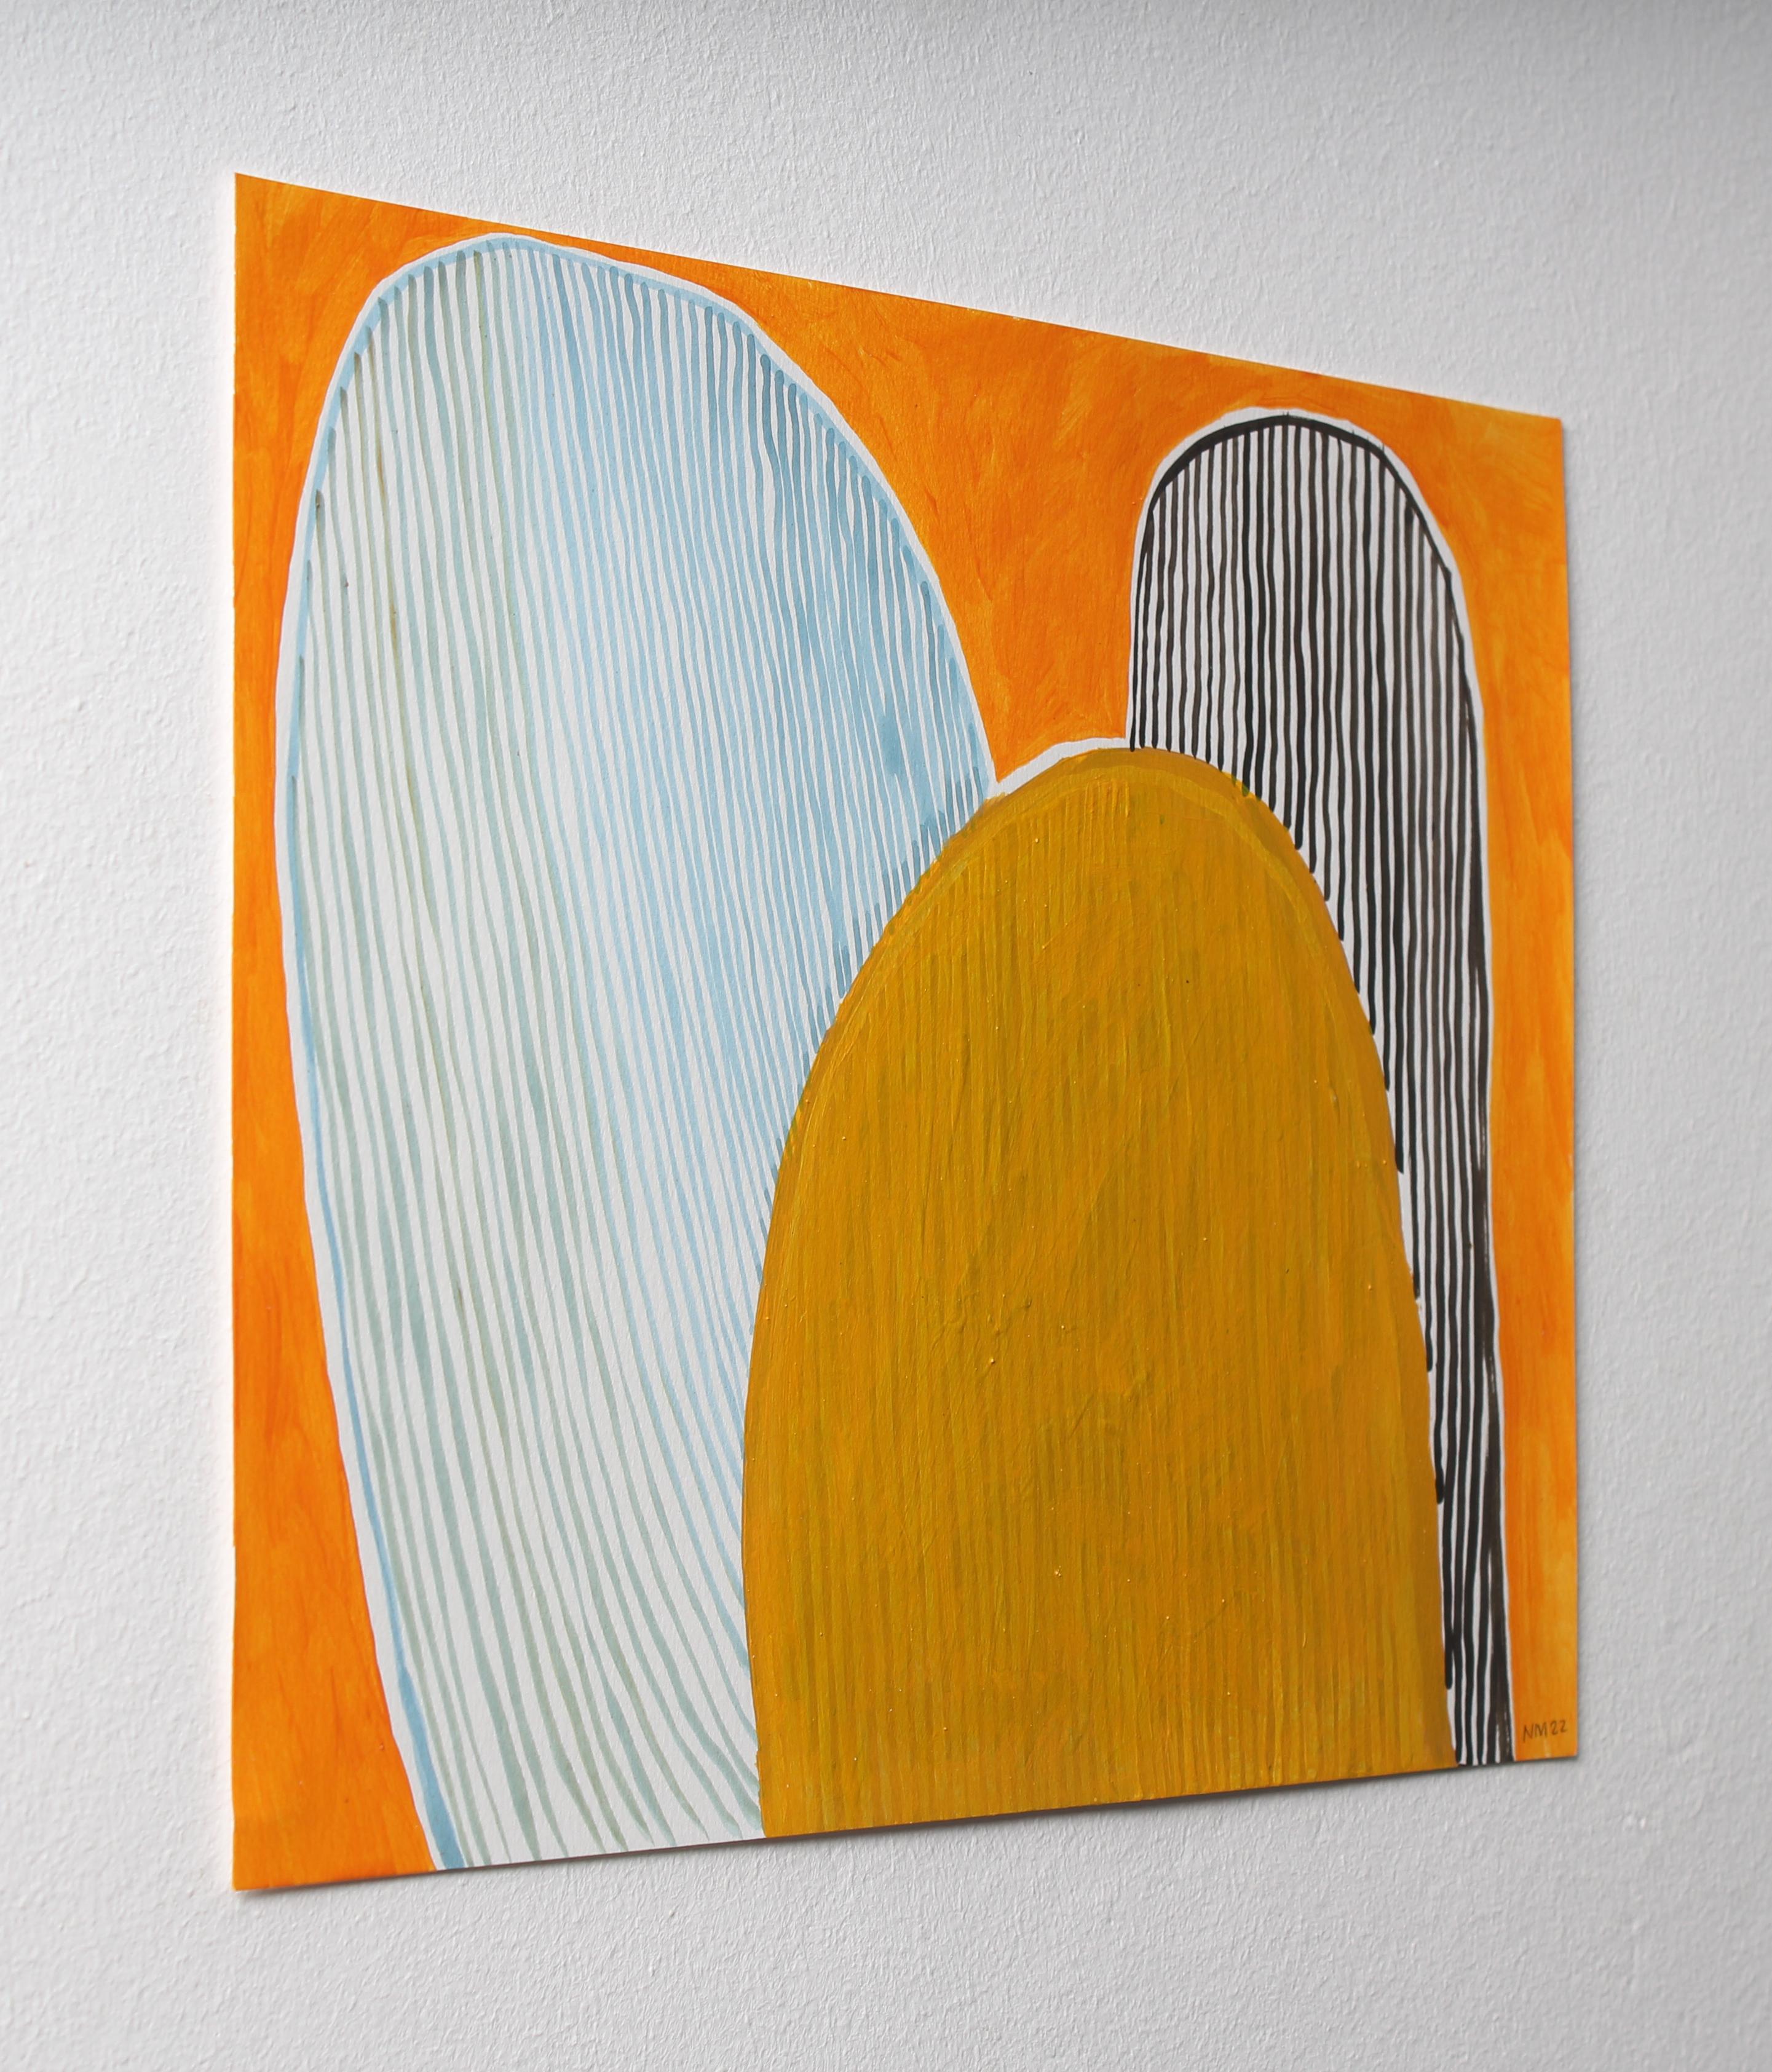 Cross Purpose Temple Series 7, Nicky Marais, abstract painting - Abstract Painting by Nicky Marais 